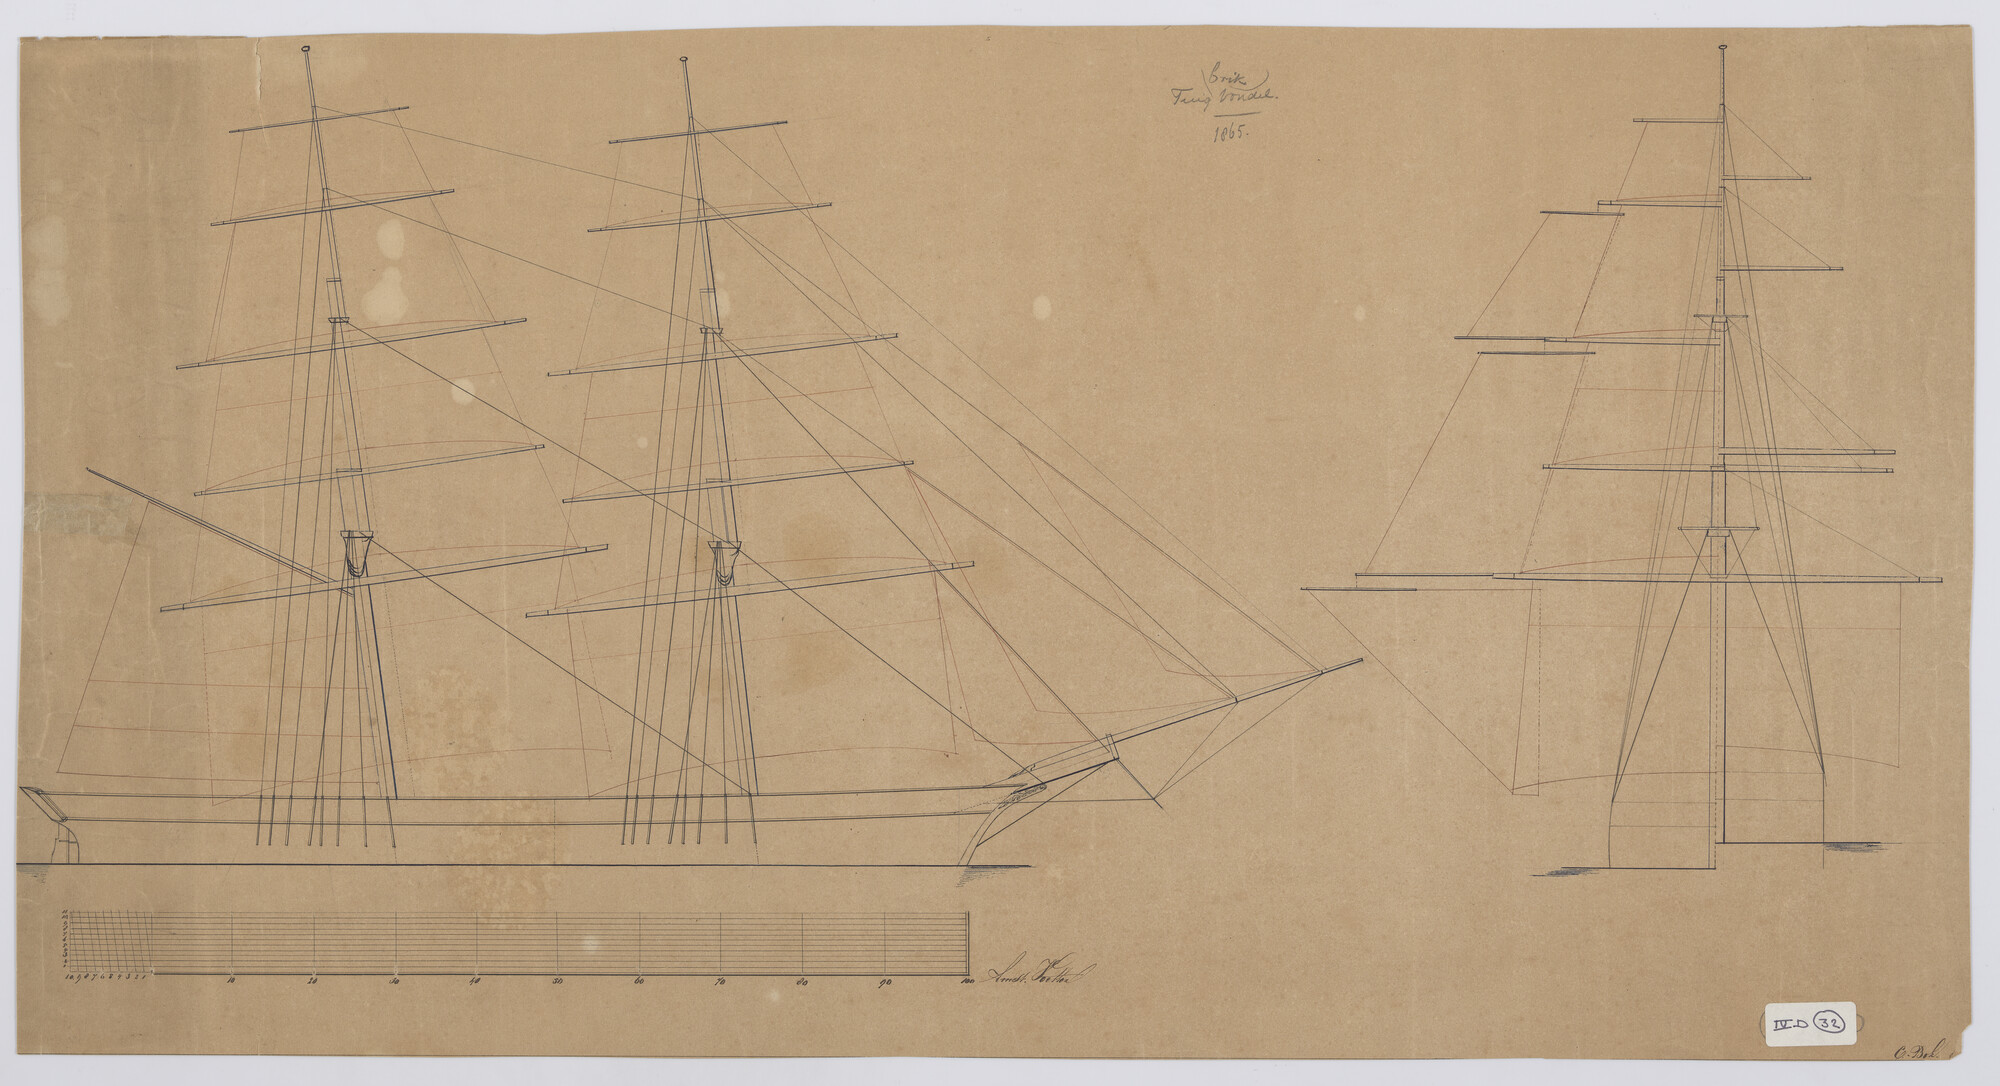 S.0674(01); Tuigplan van de brik 'Vondel'; technische tekening